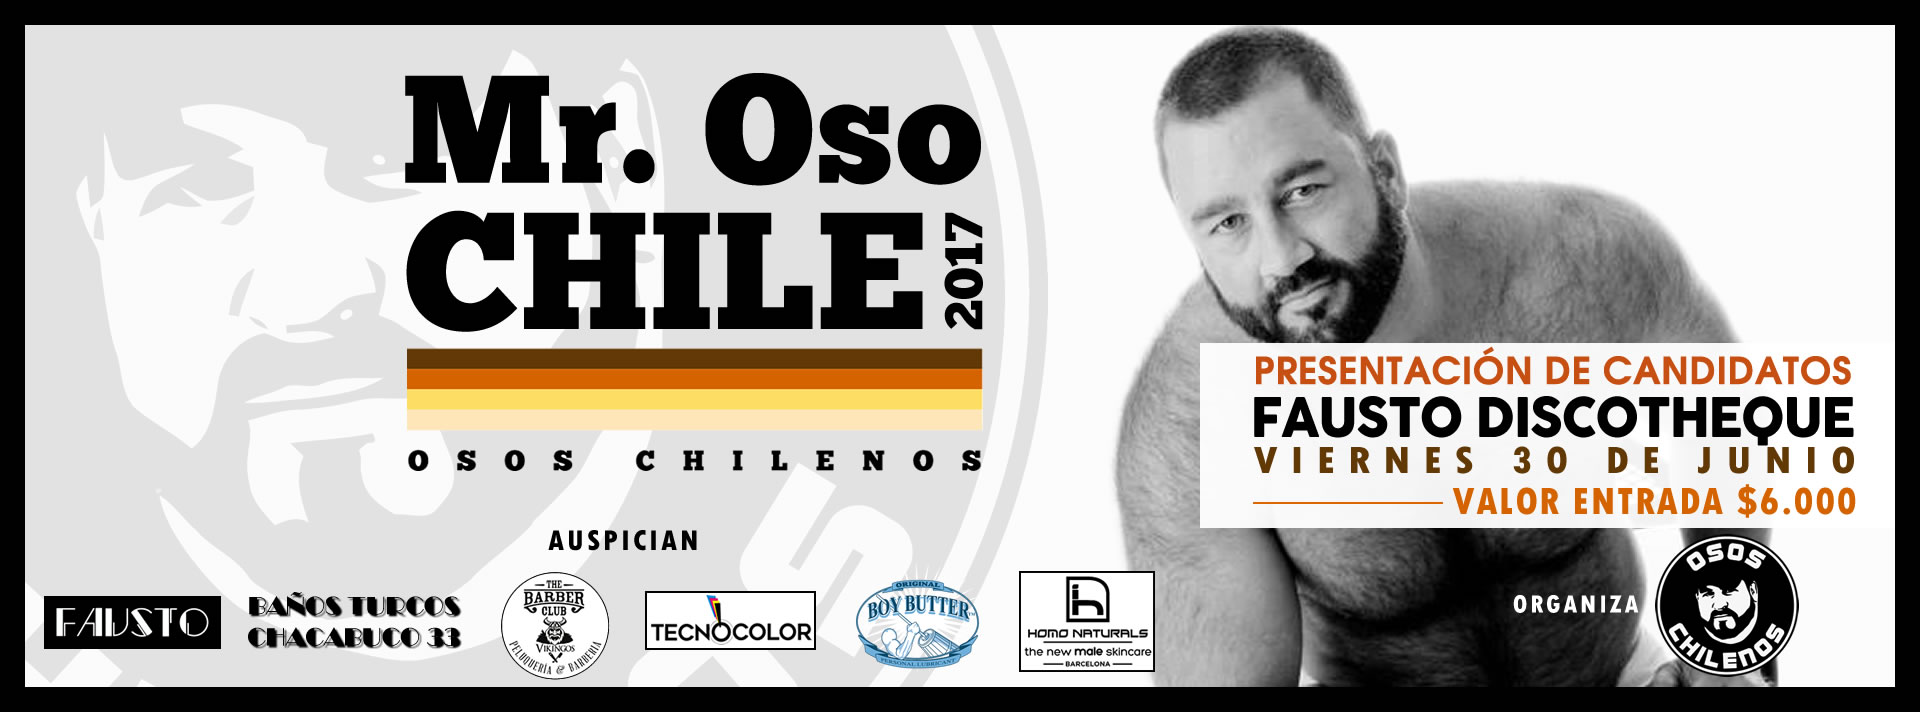  Mr. Oso Chile 2017 